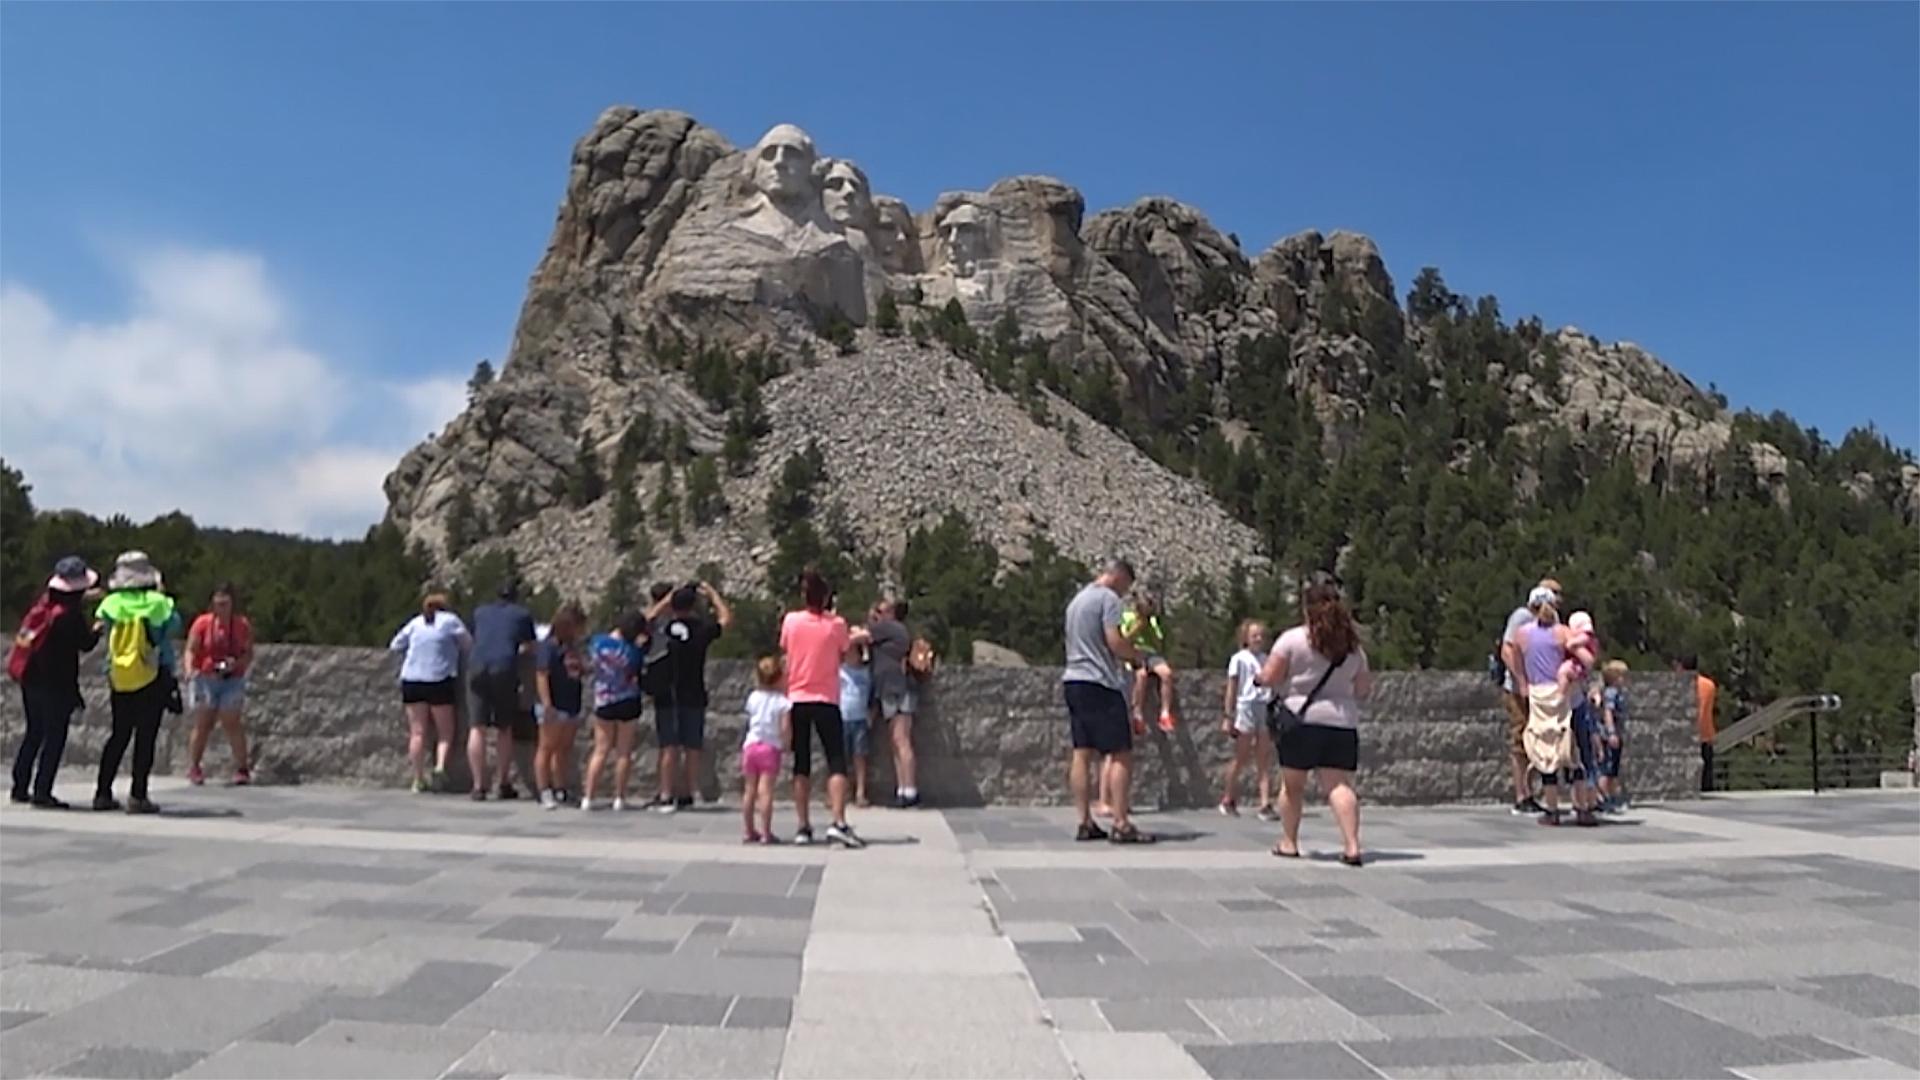 Mount Rushmore - national memorial